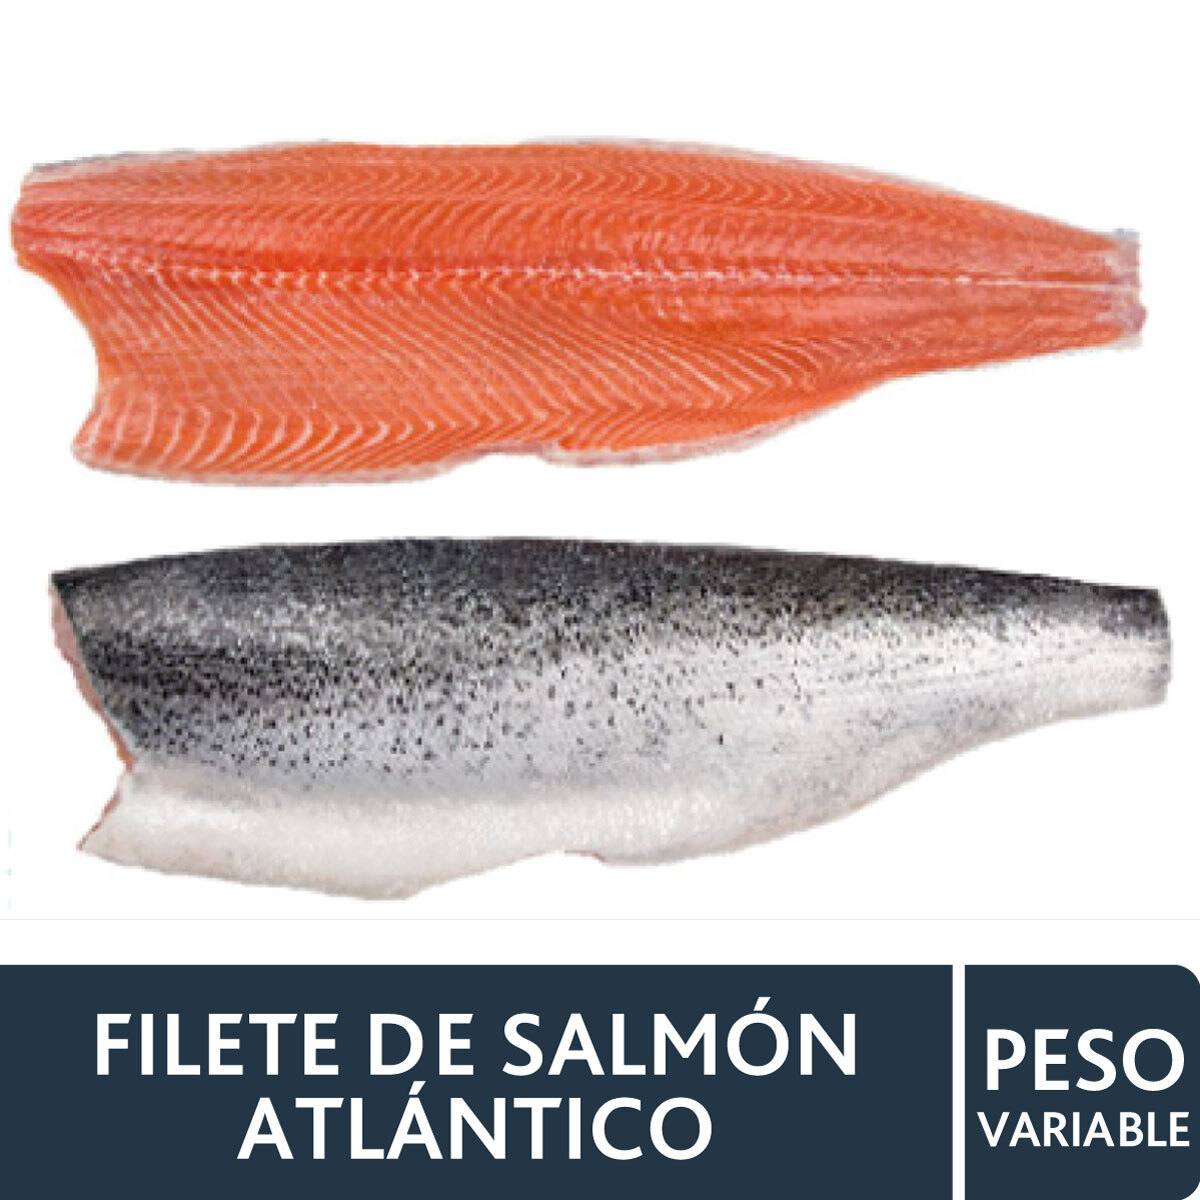 Filete de Salmon Atlantico Premium